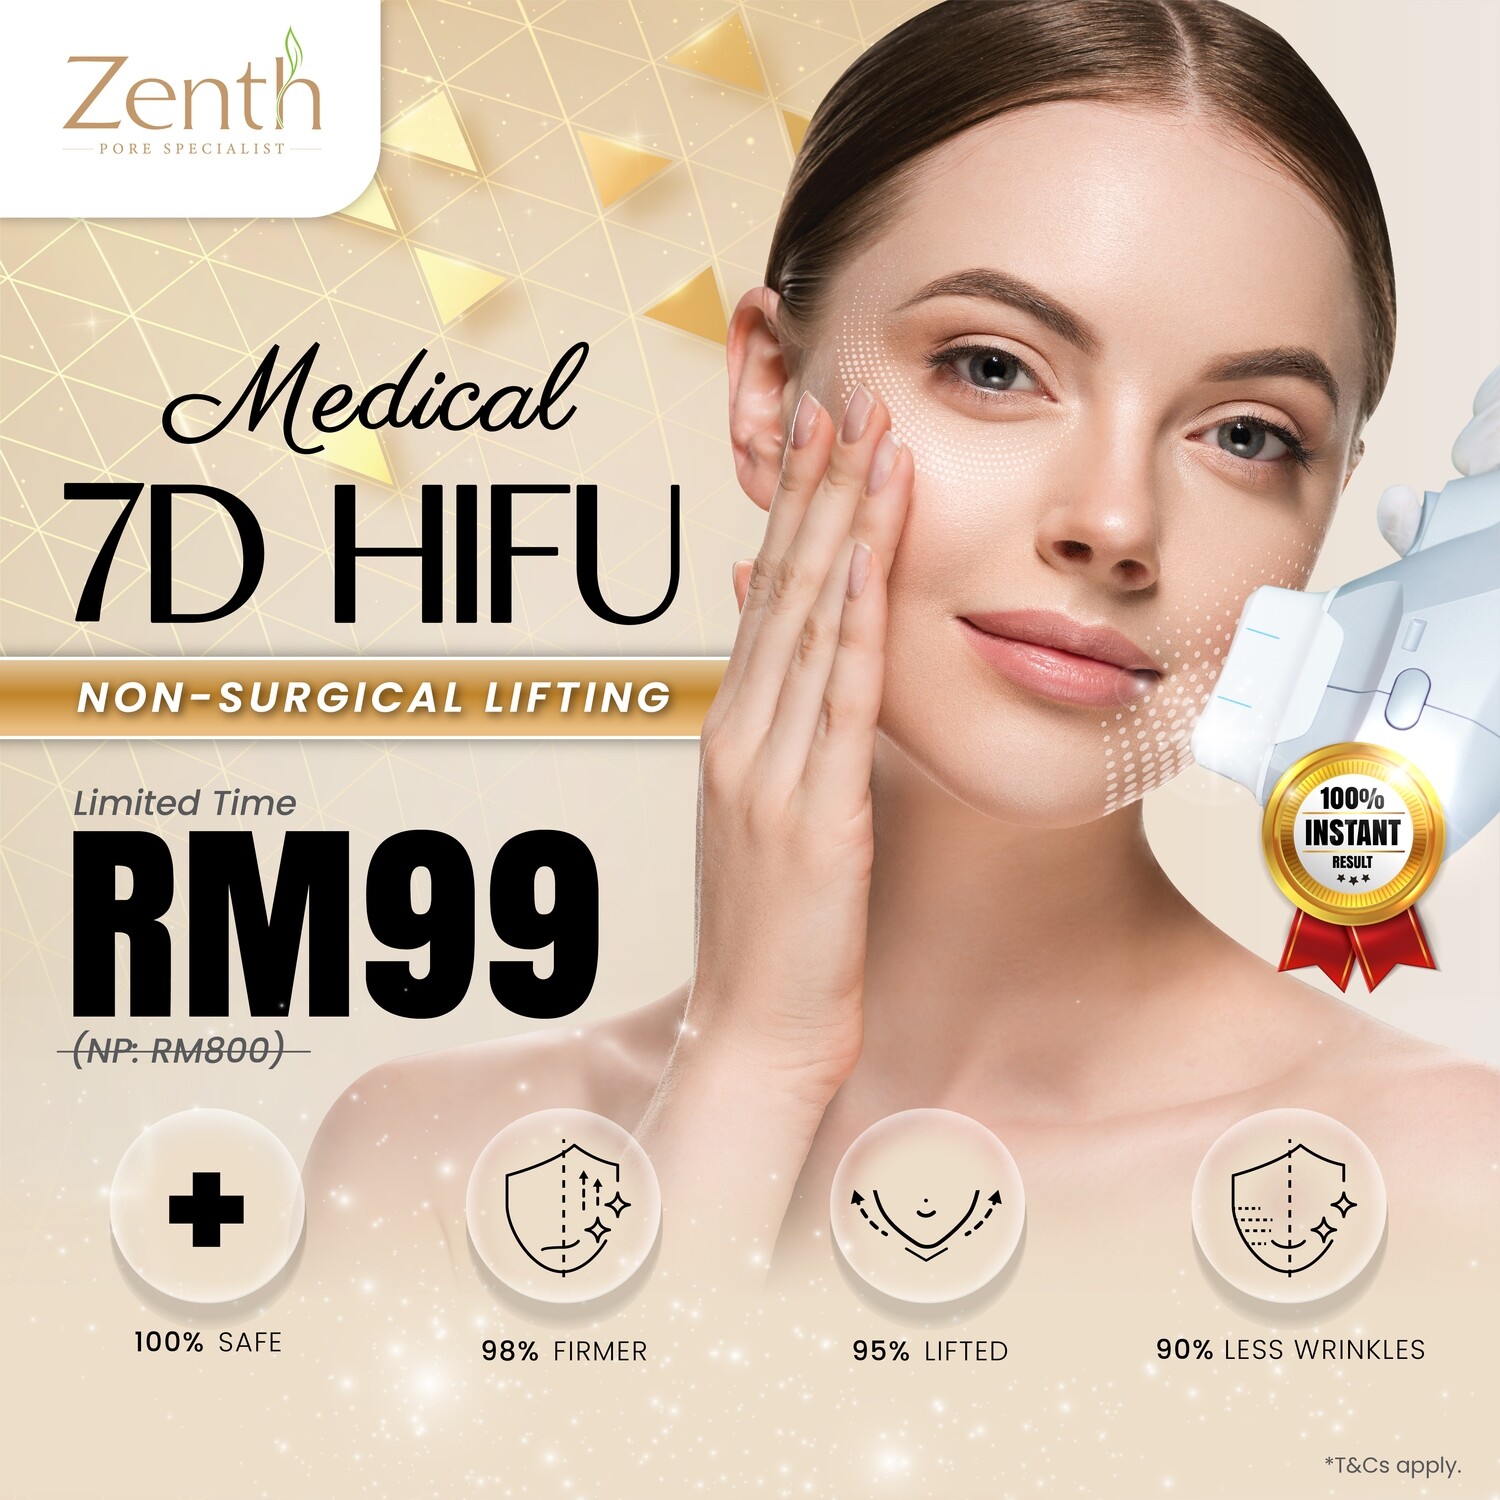 7D-HIFU (Medical Face-Lift)